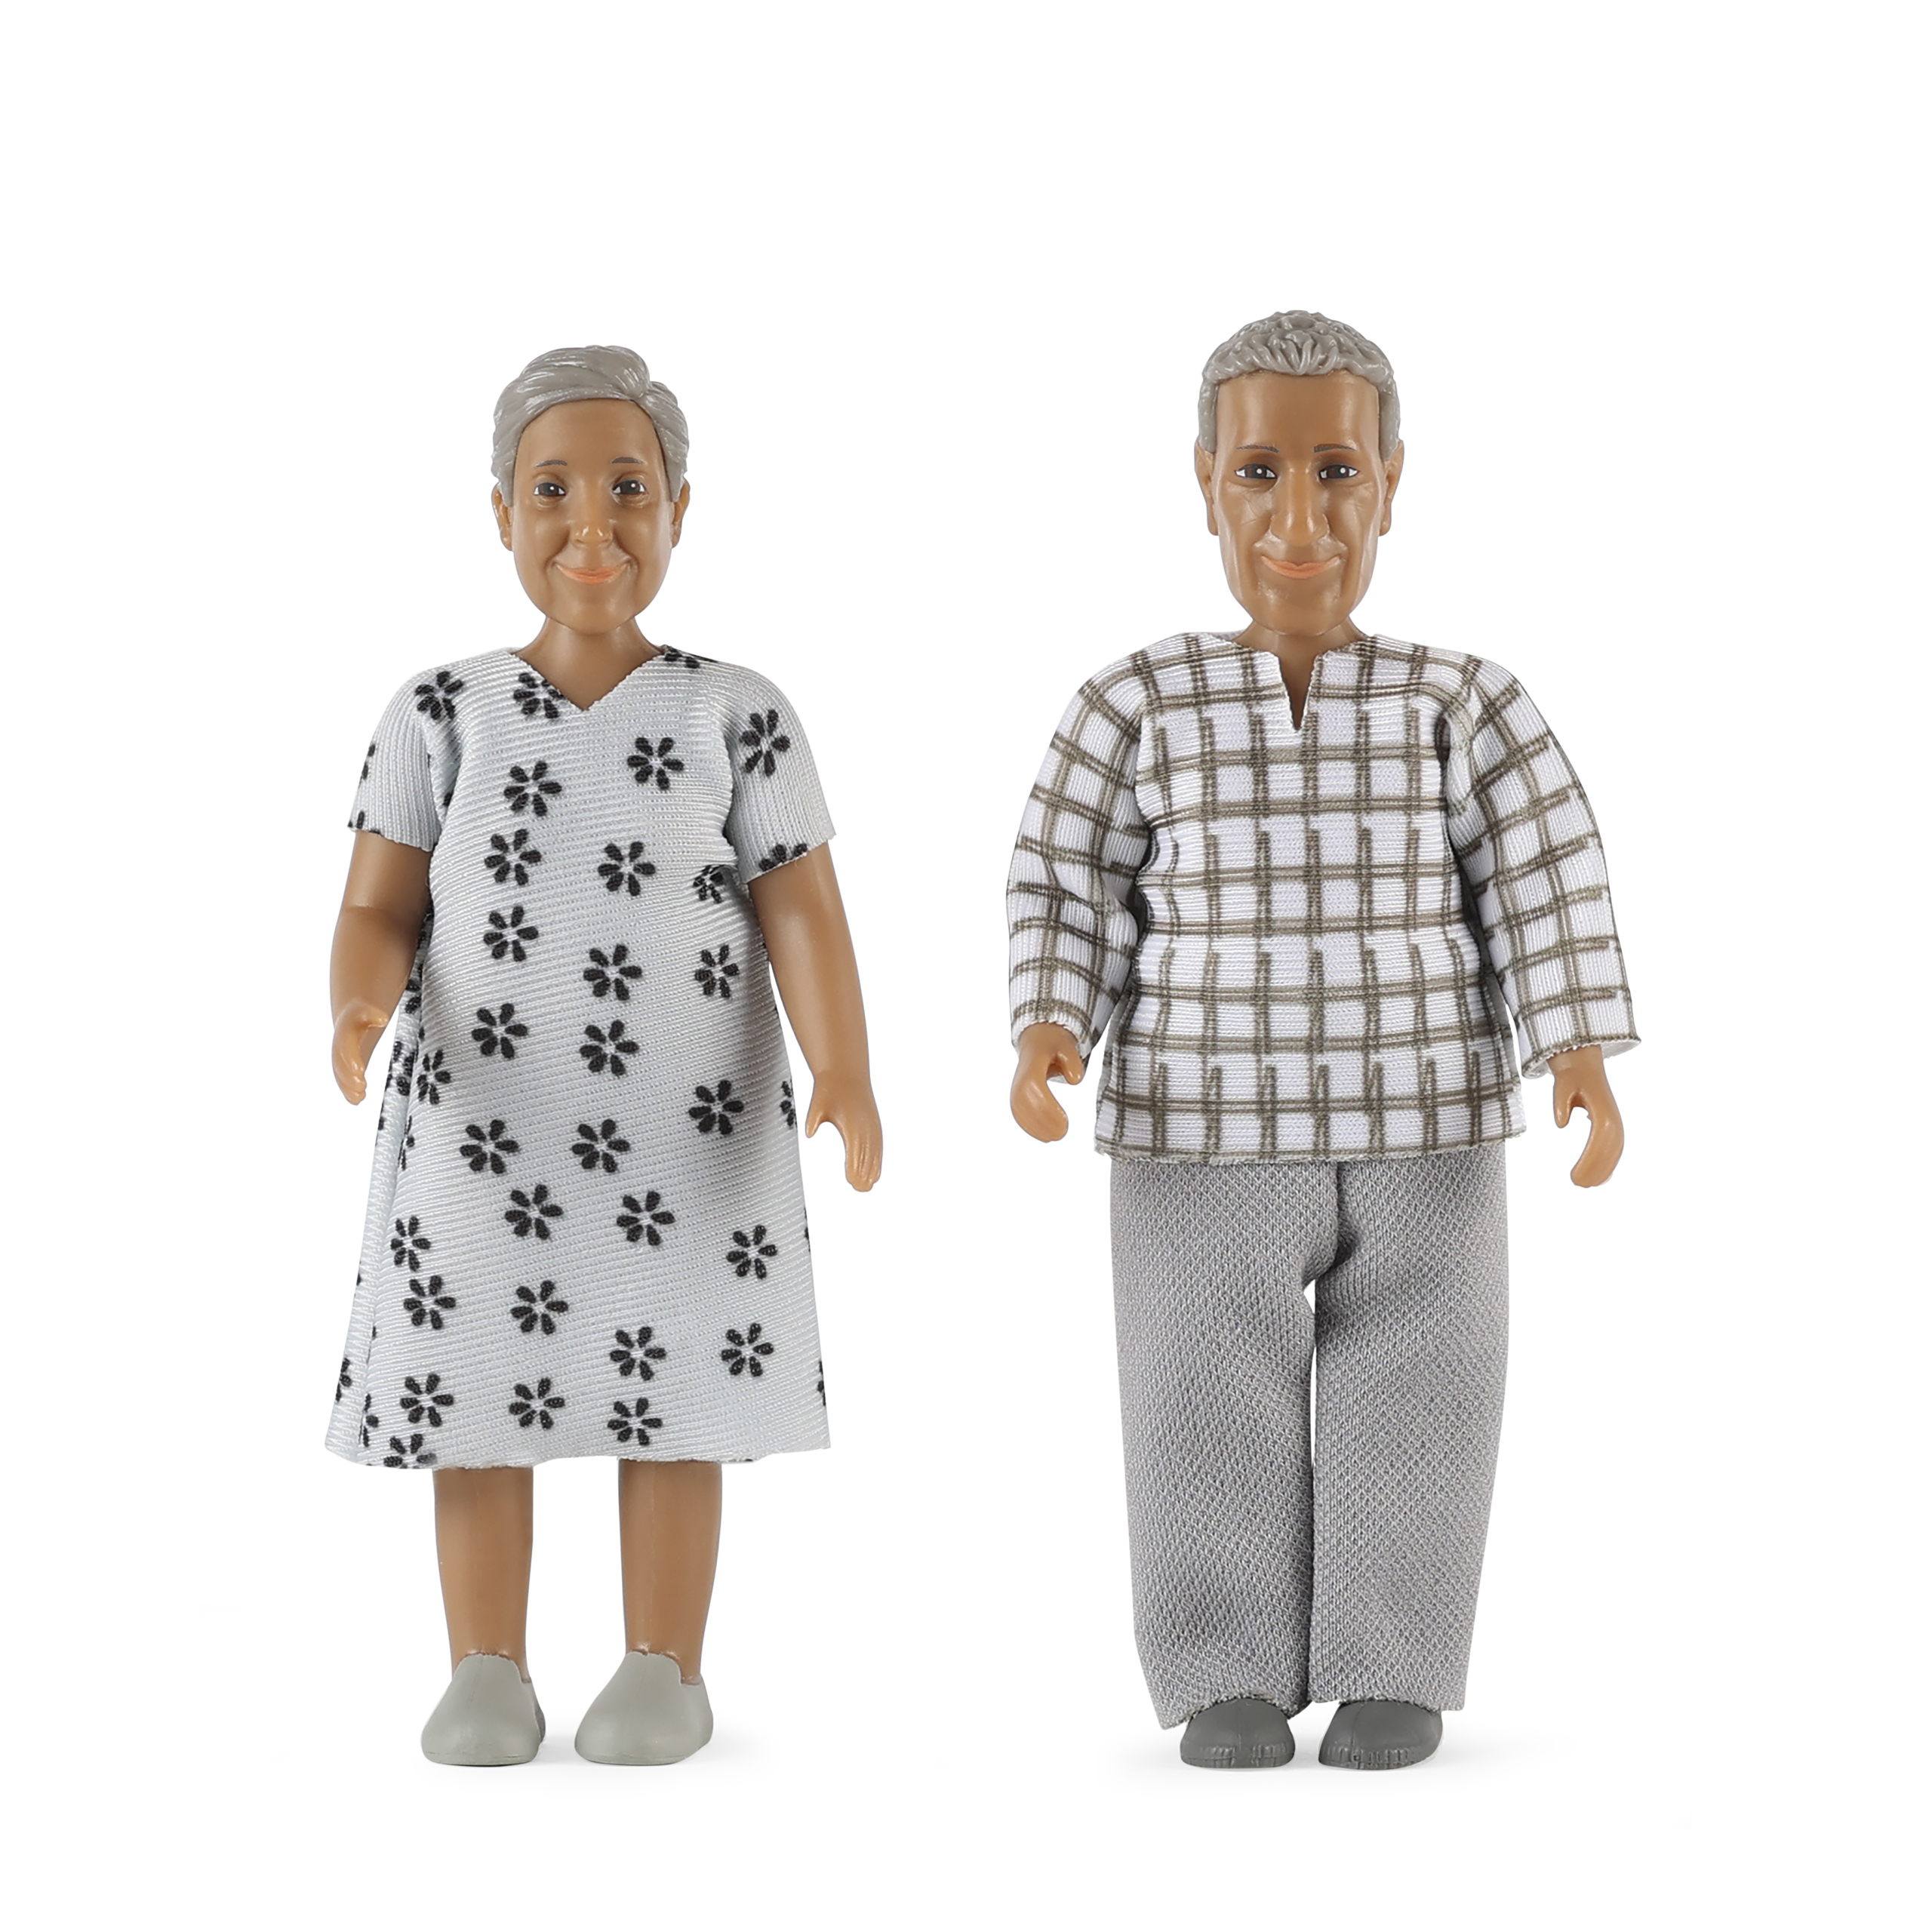 Dollhouse dolls & animals	 lundby	dollshouse dolls elderly couple nikki